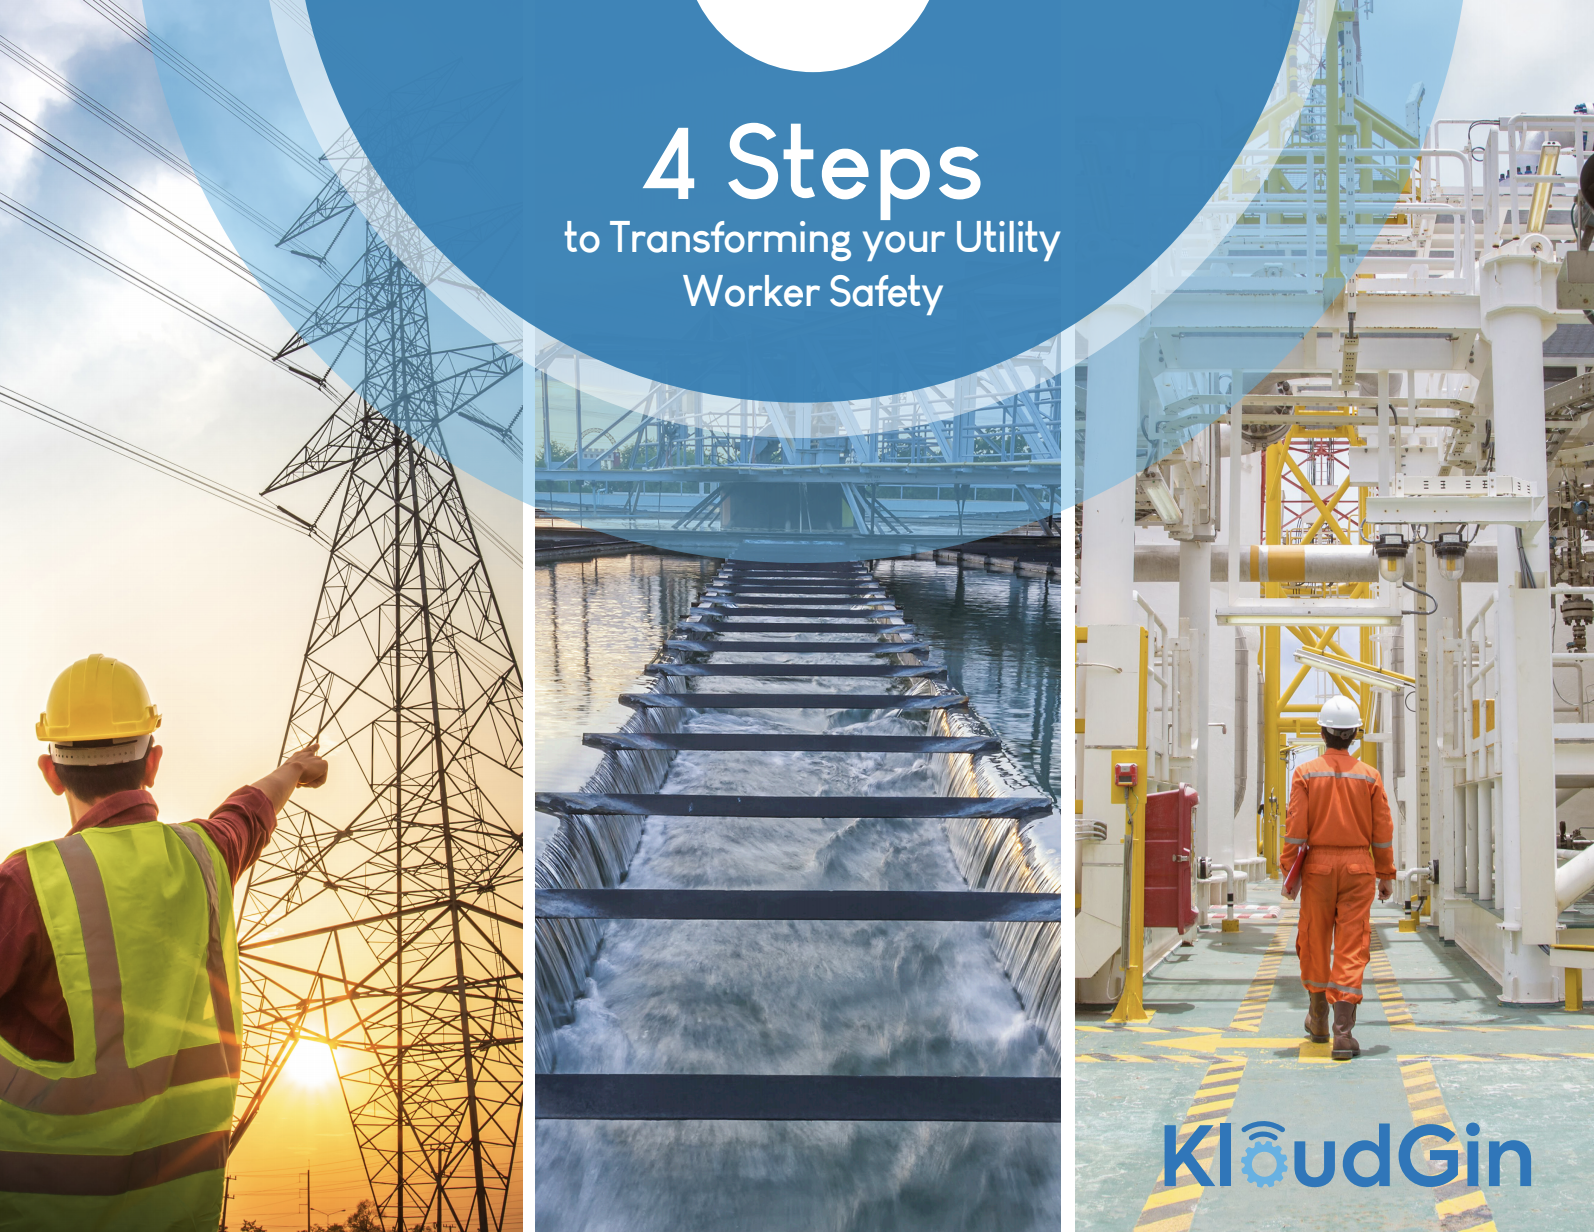 4 steps ebook utilities image